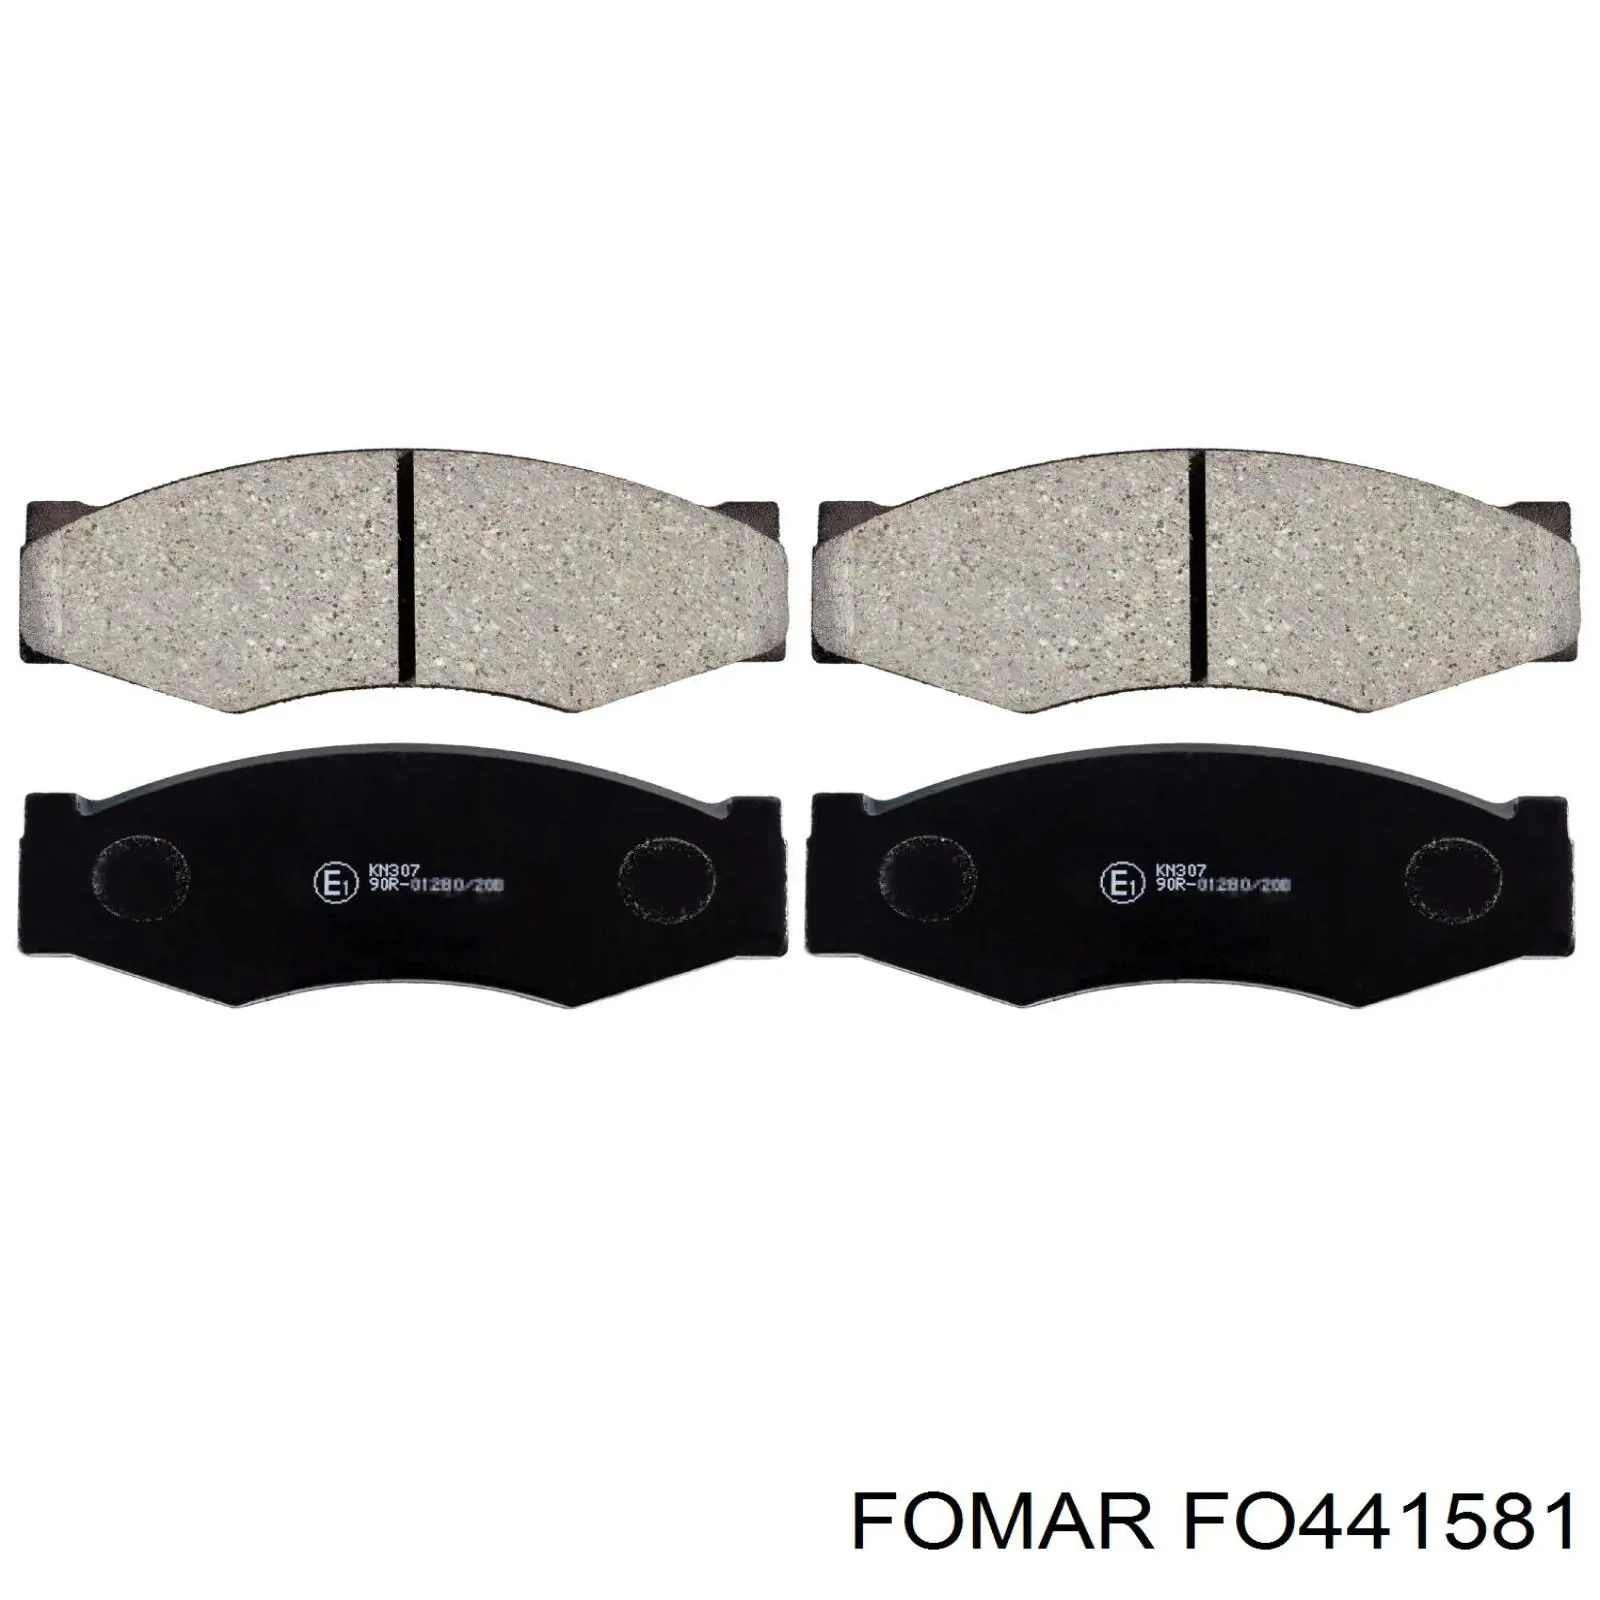 FO441581 Fomar Roulunds колодки гальмівні передні, дискові